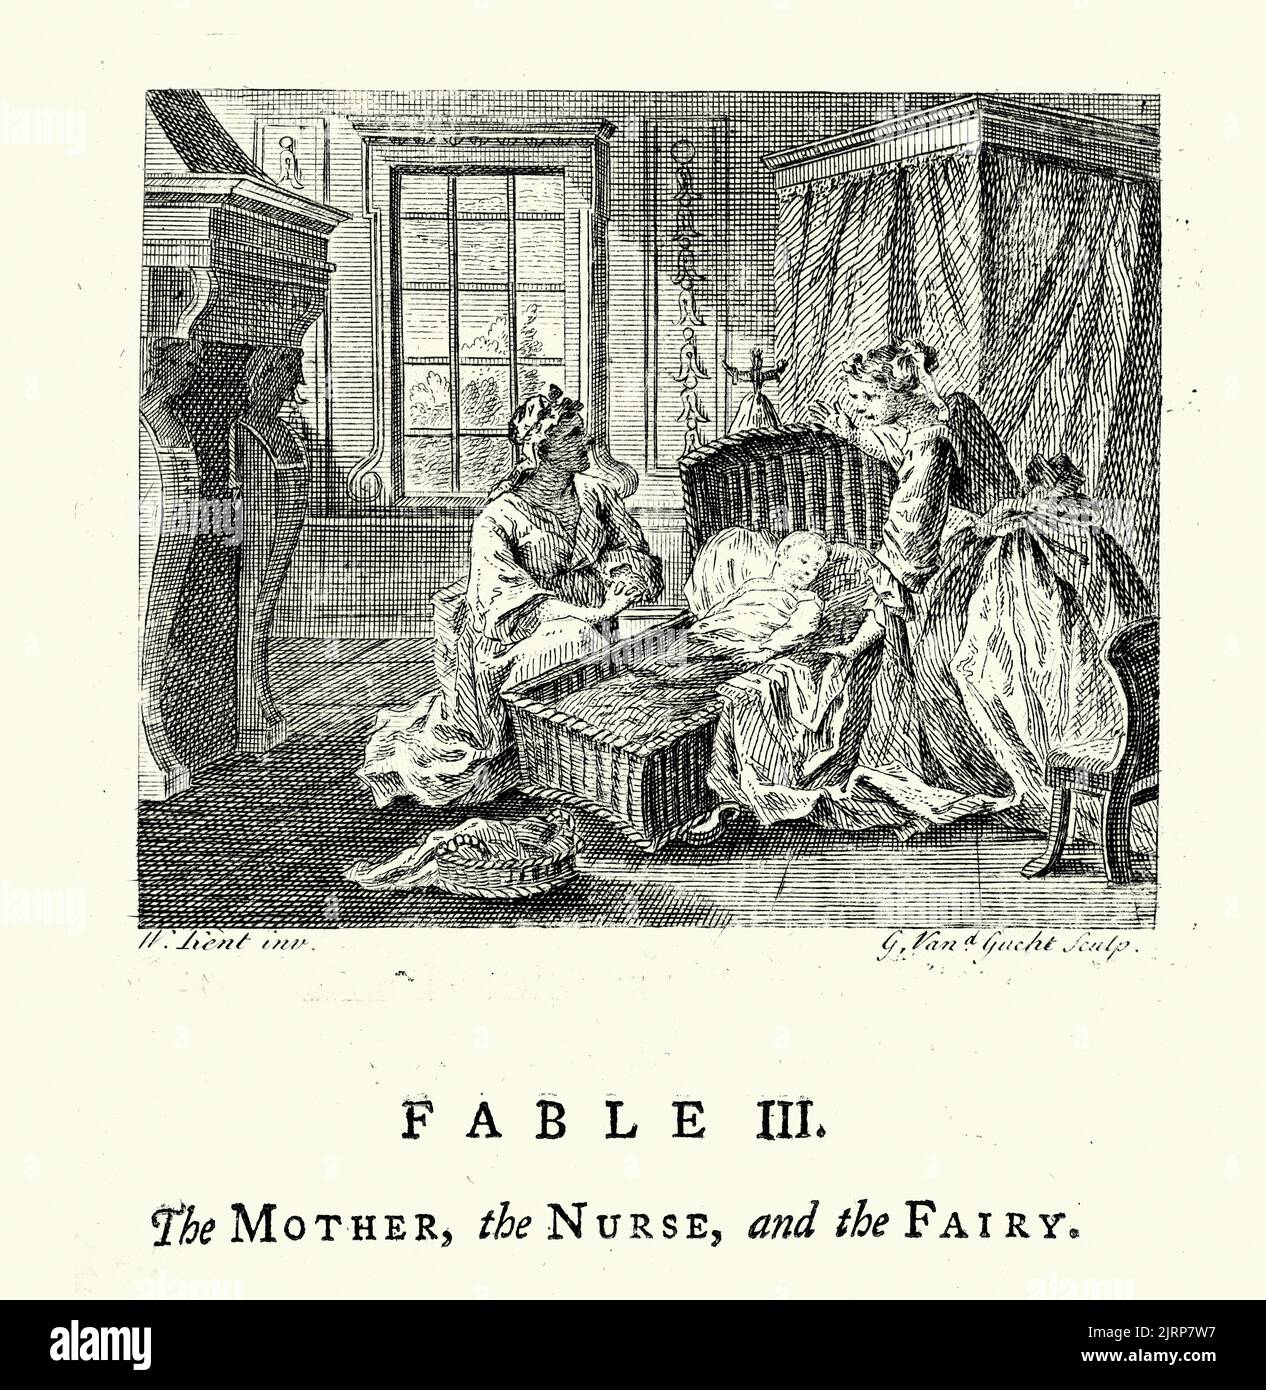 Gravure vintage de la mère, l'infirmière et la Fée, des Fables de John gay 18th siècle Banque D'Images